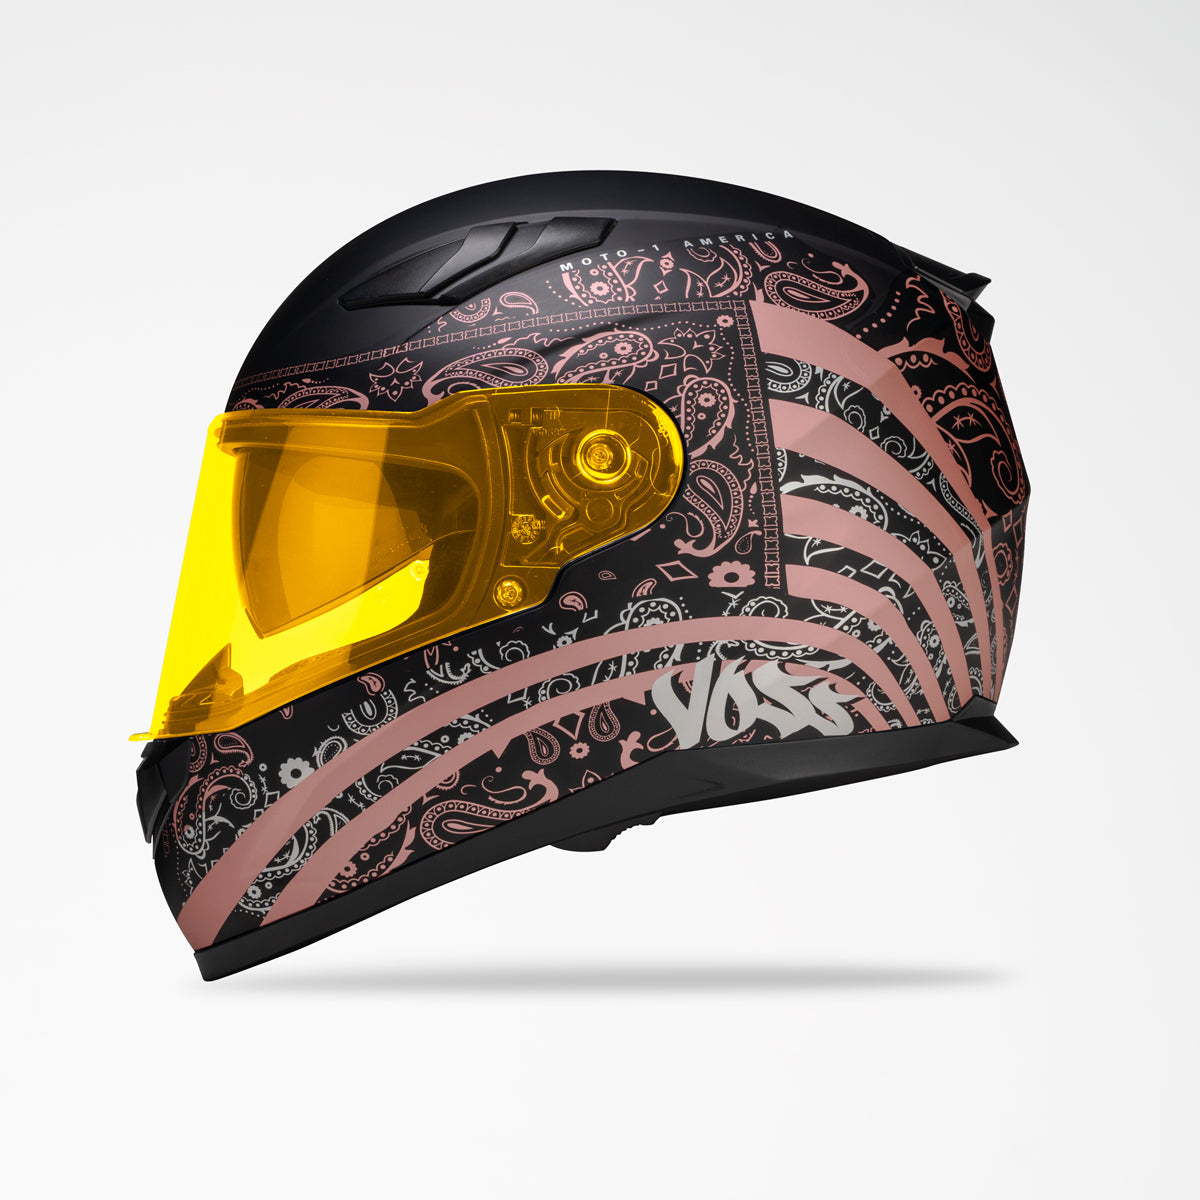 Voss 988 Moto-1 Metallic Pink America Helmet